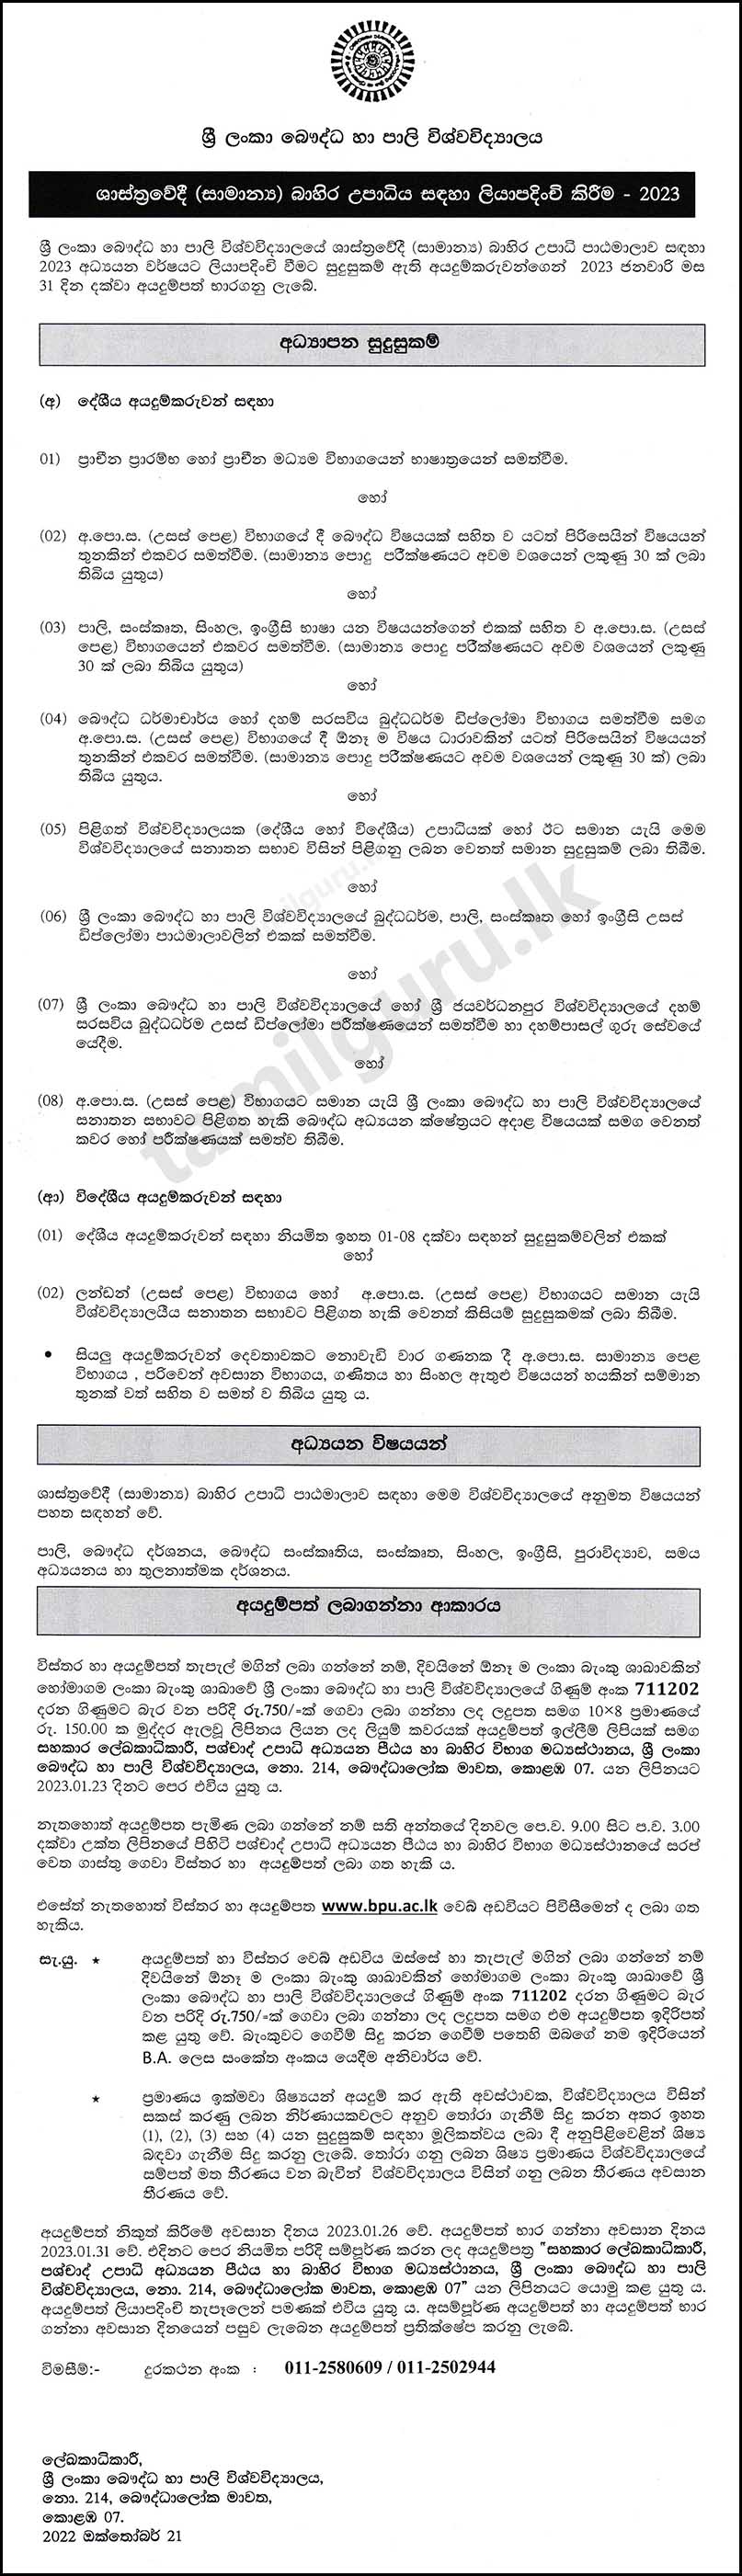 Bachelor of Arts (BA) External Degree Programme 2023 - Buddhist and Pali University of Sri Lanka (BPU)